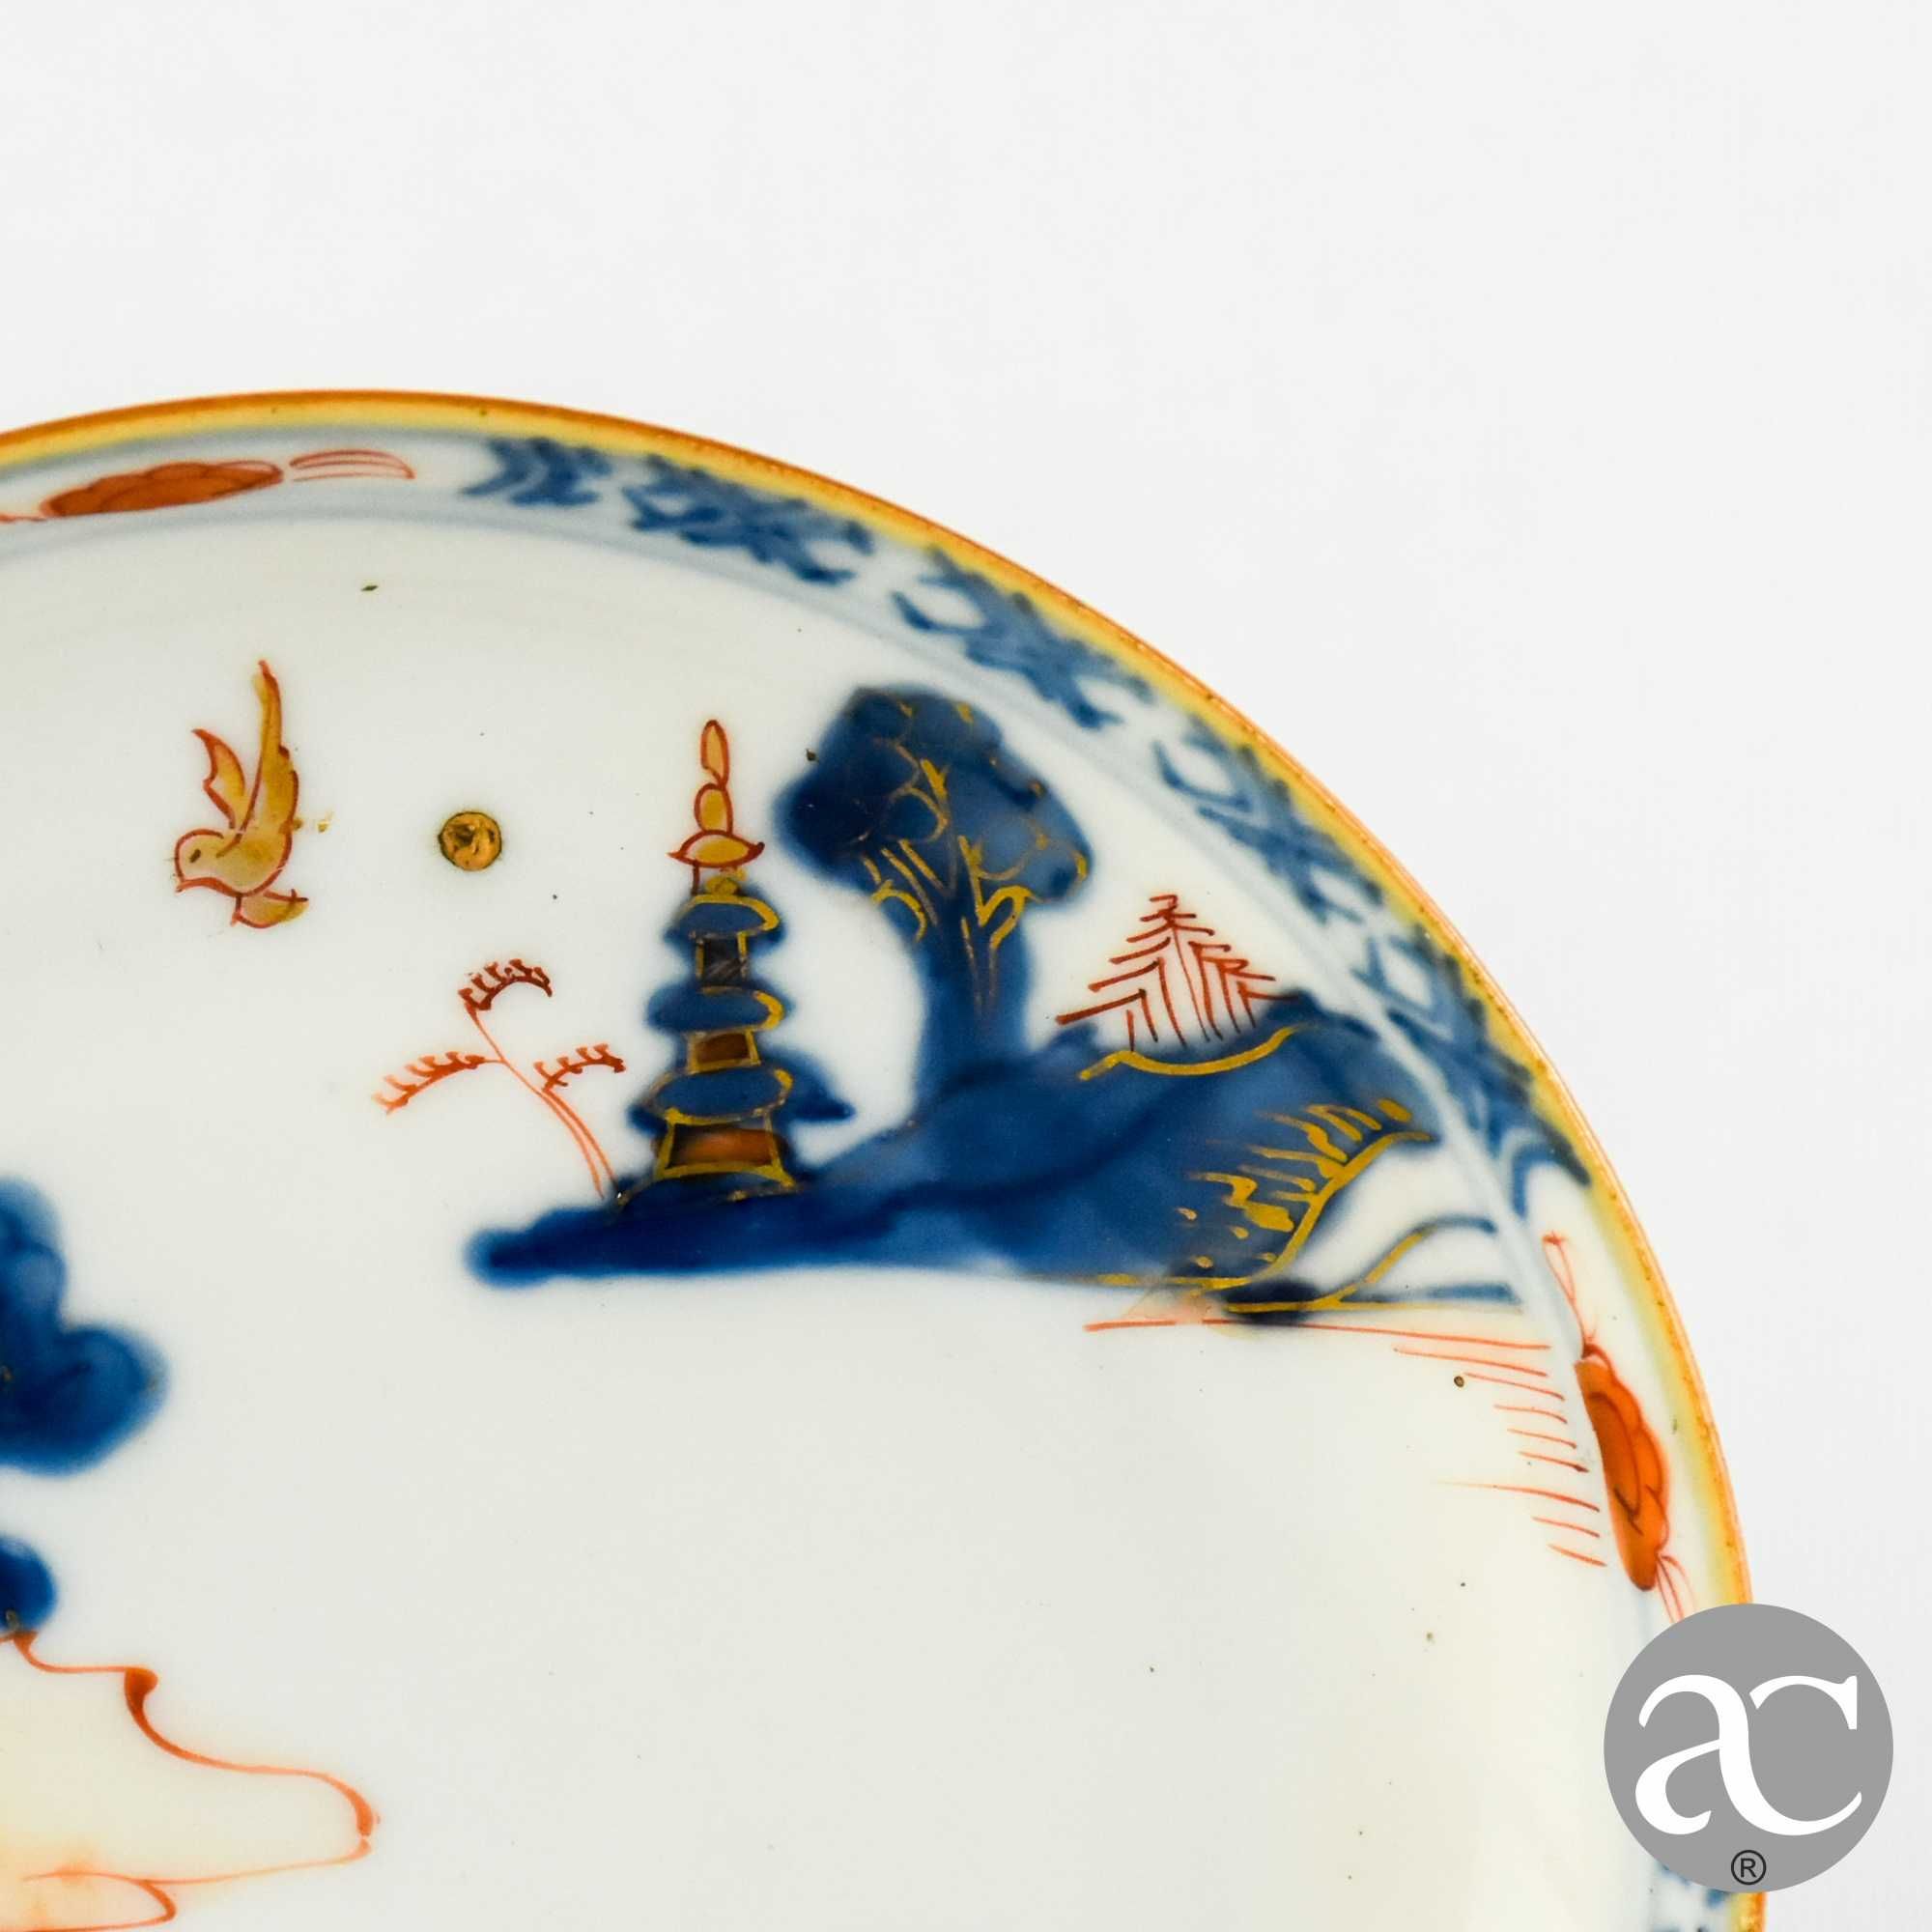 Covilhete / Prato Porcelana da China, Imari, Kangxi, séc. XVII / XVIII